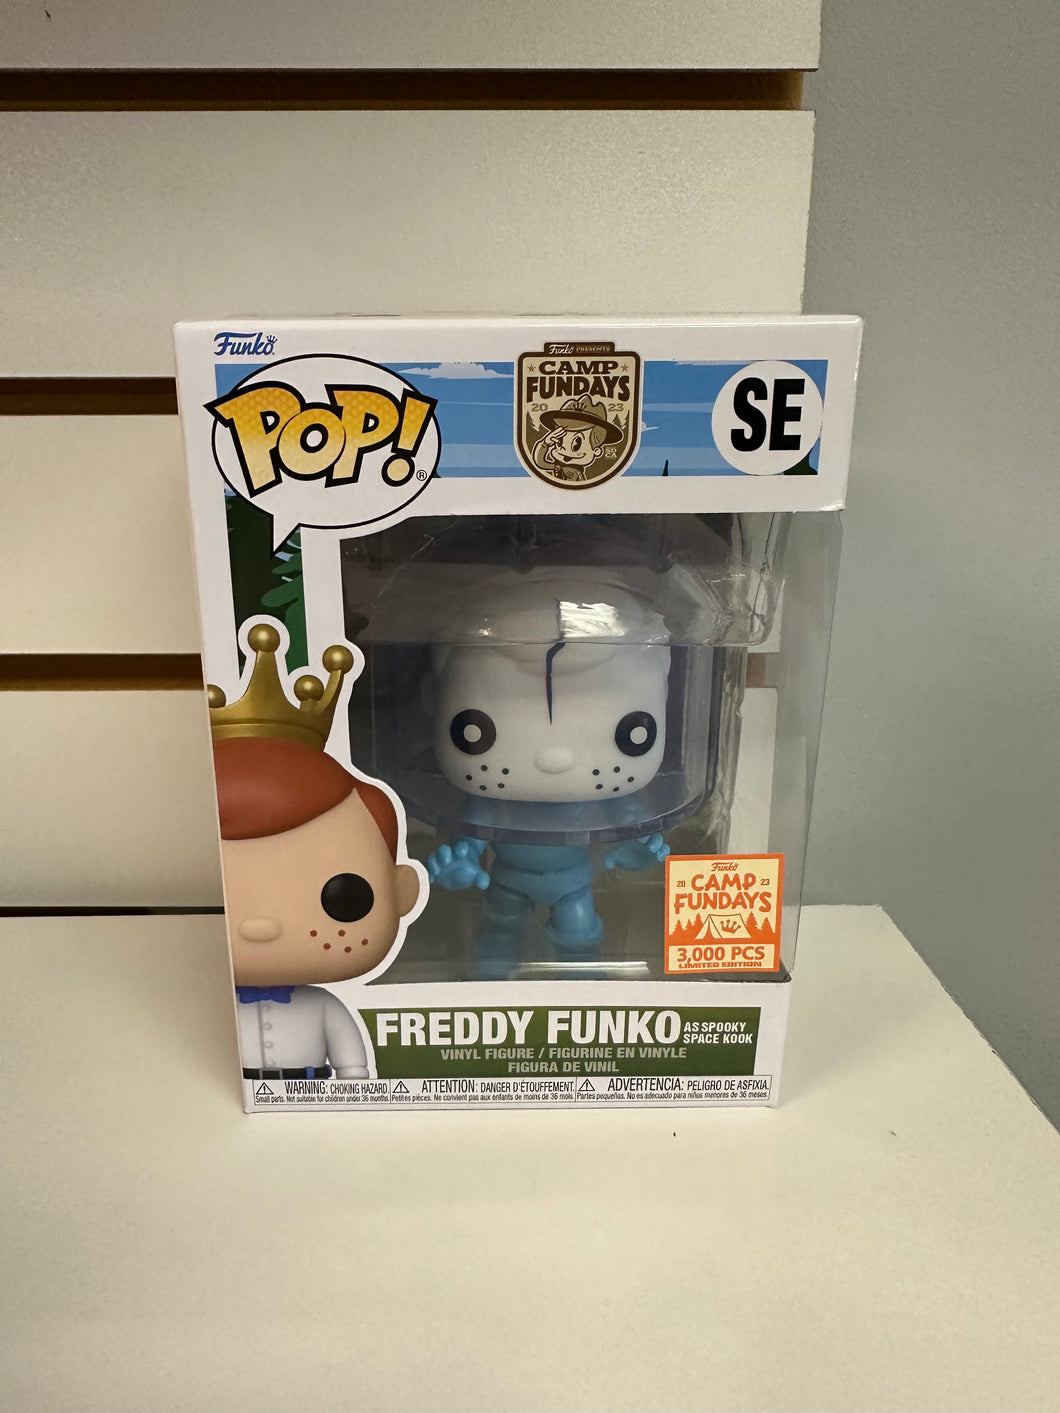 Funko Pop Freddy Funko as Spooky Space Kook